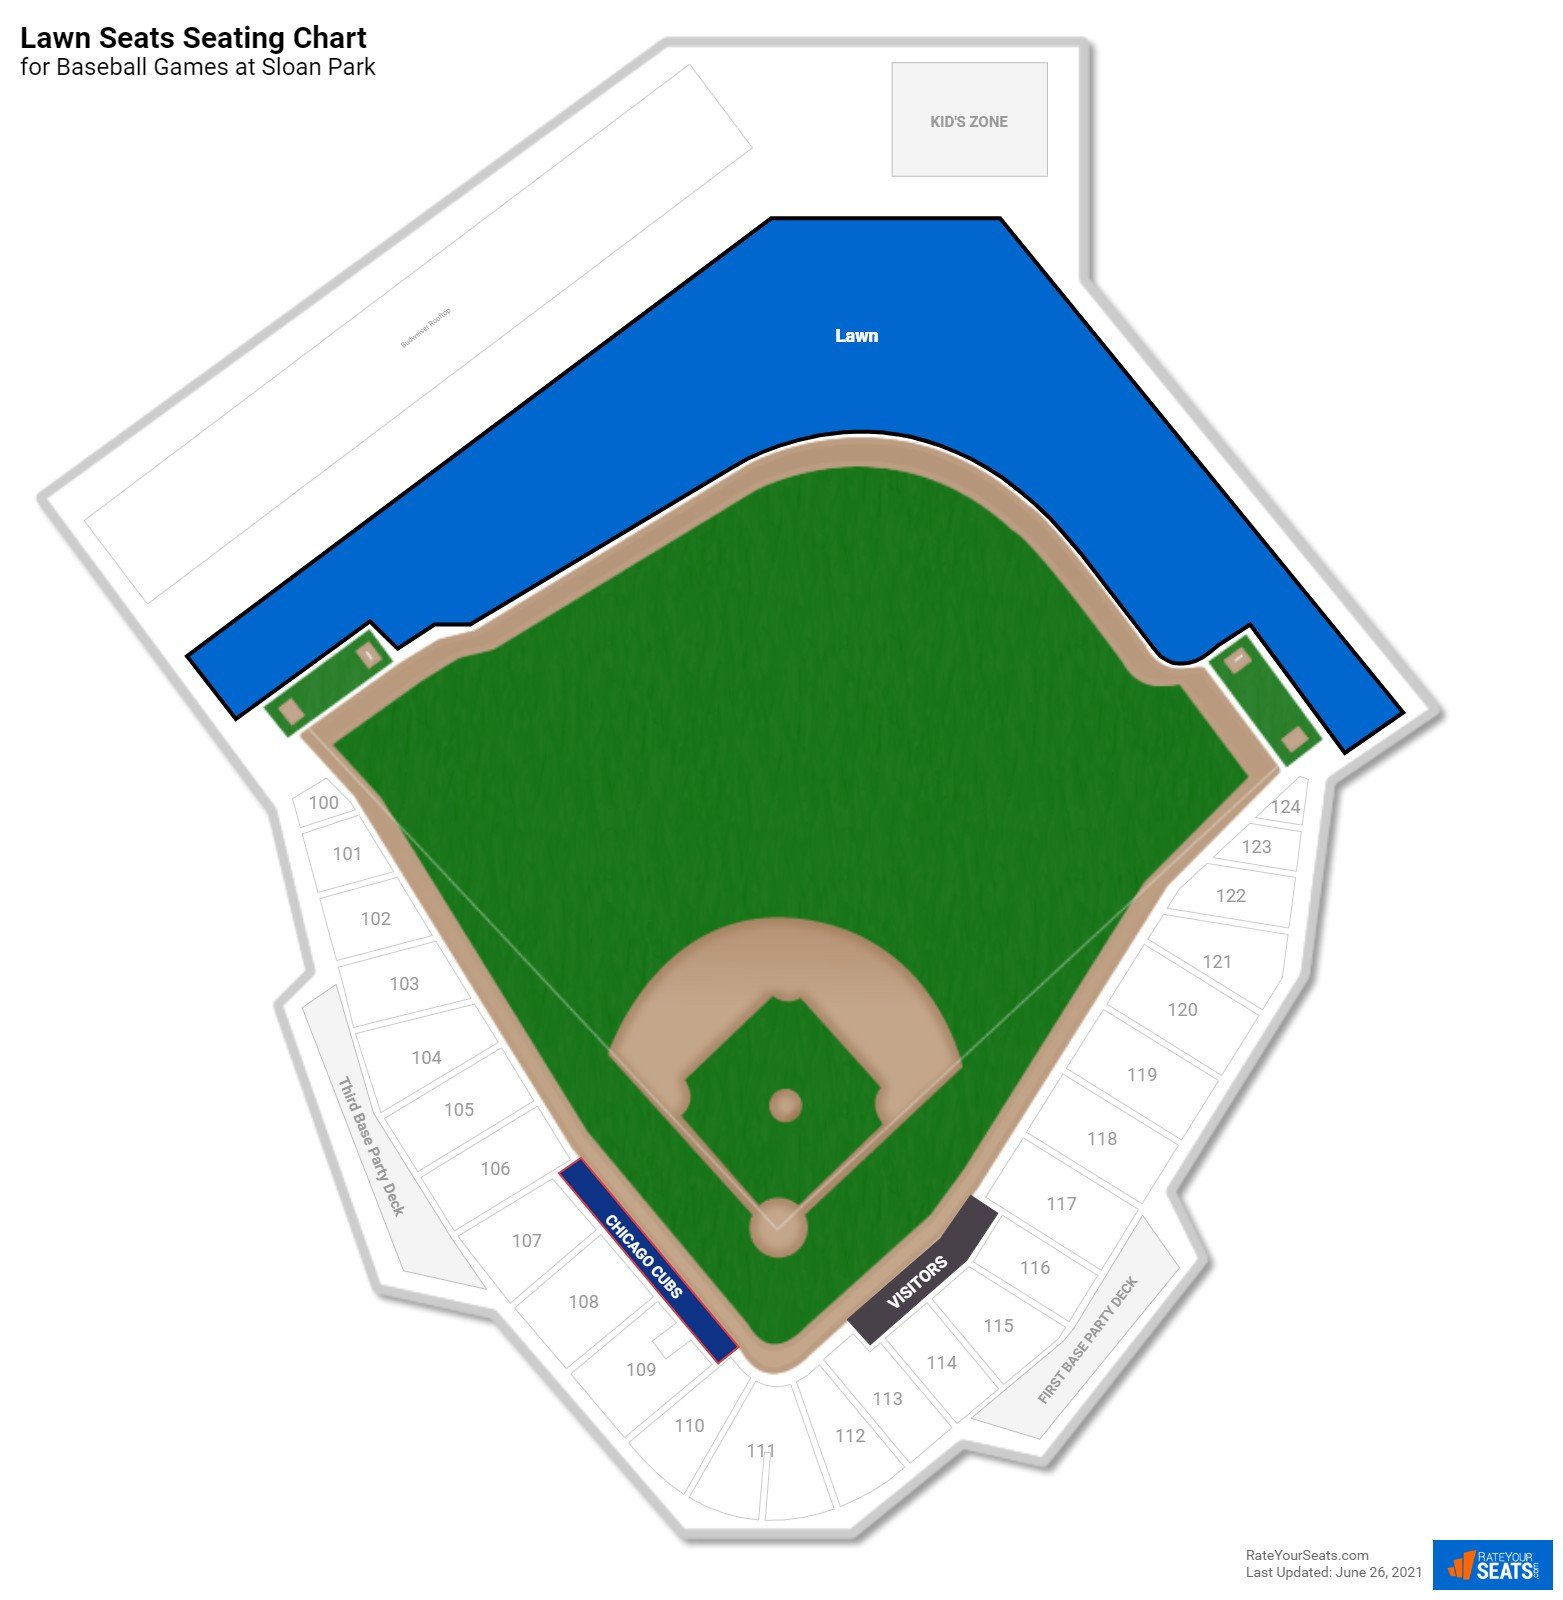 Baseball Lawn Seats Seating Chart at Sloan Park